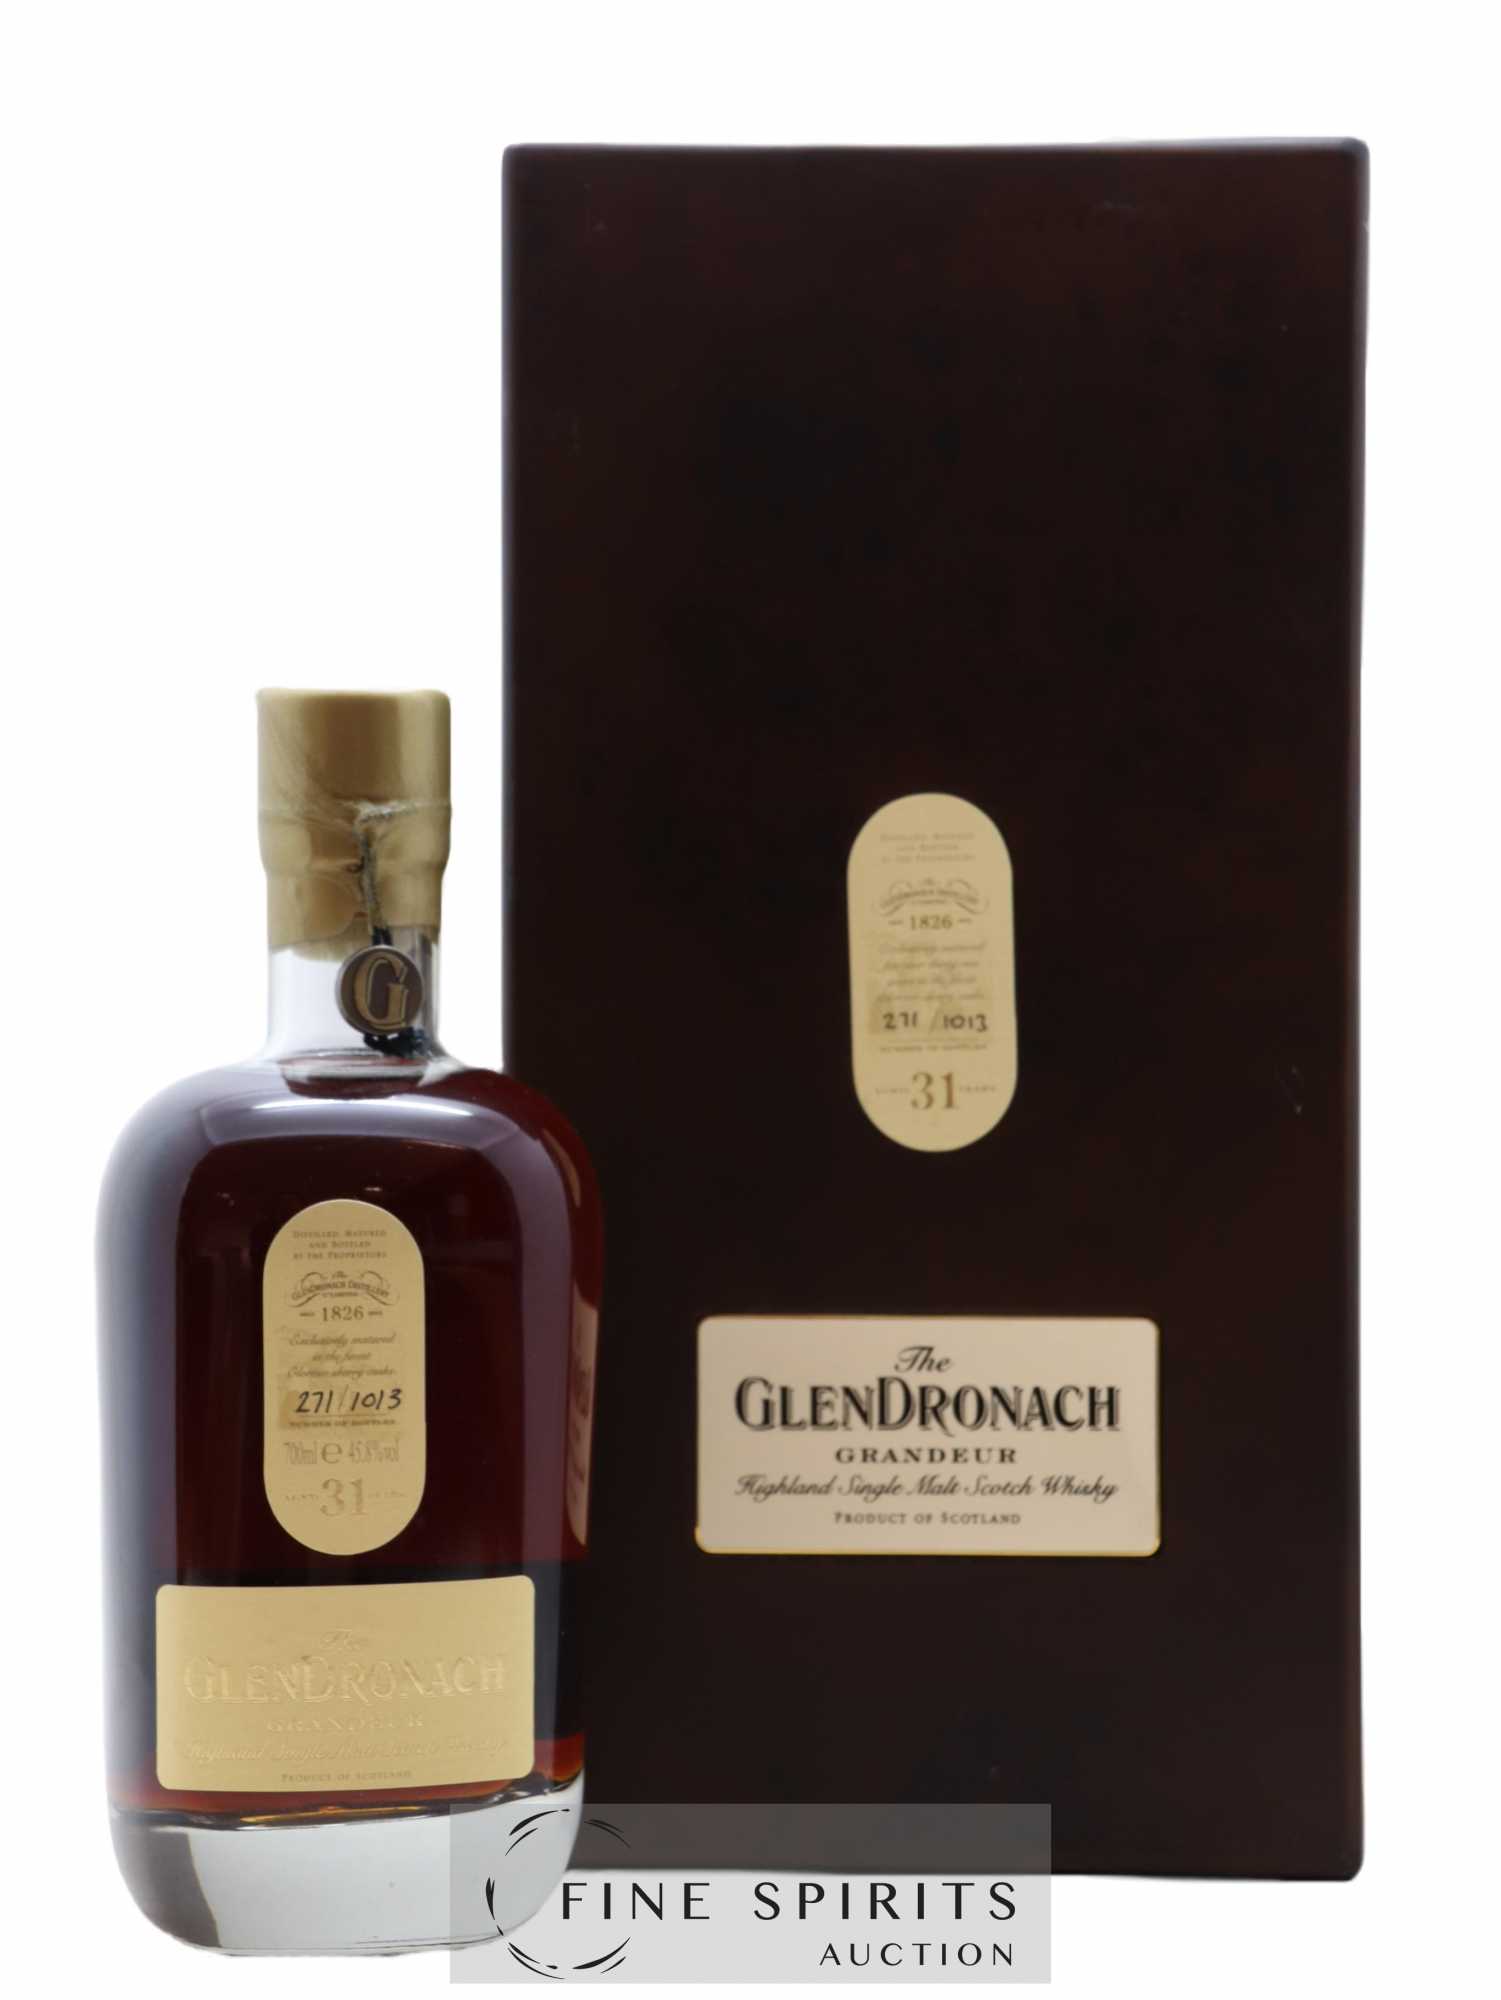 Glendronach 31 years Of. Grandeur One of 1013 